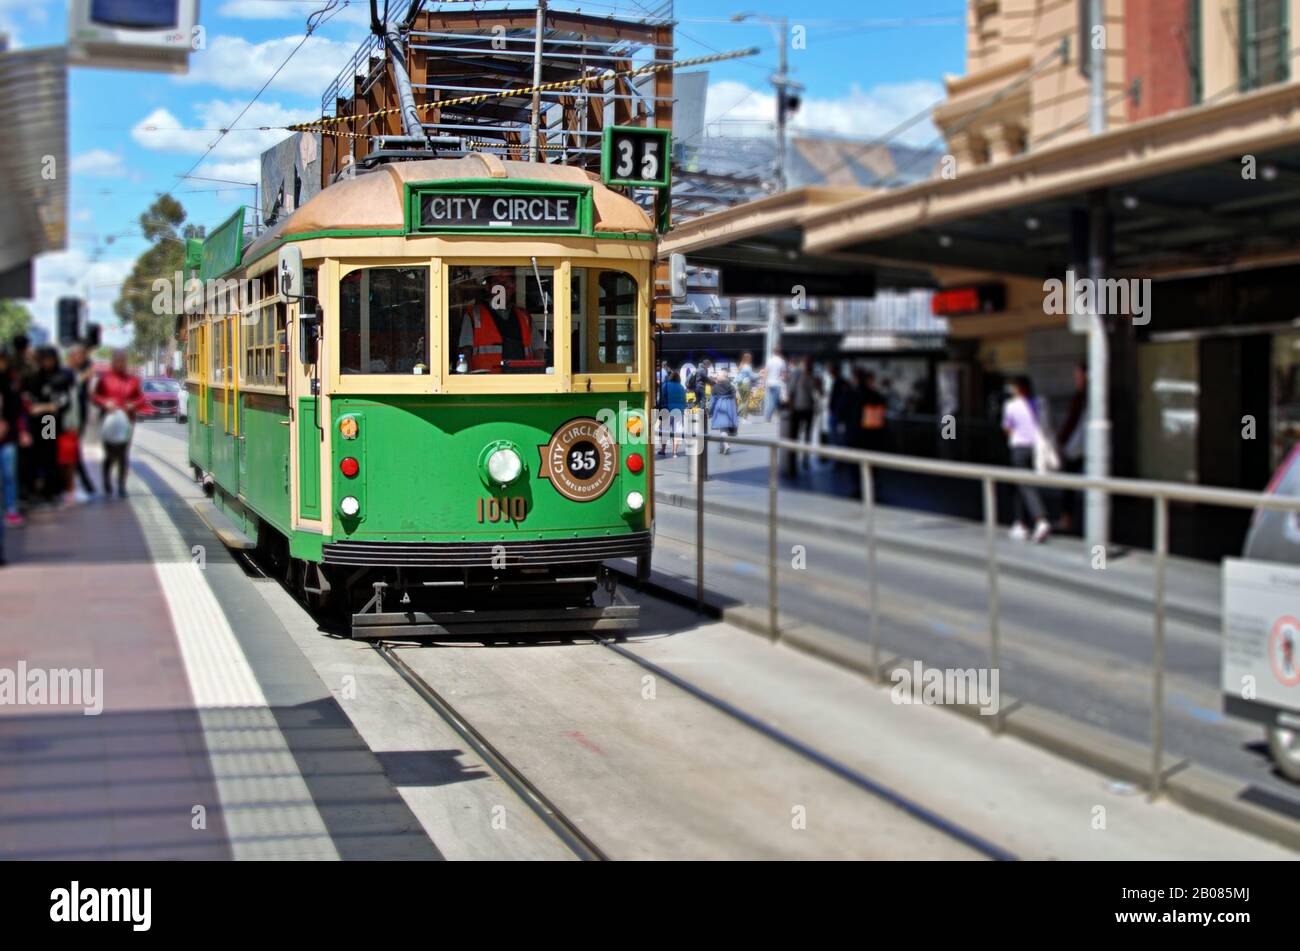 El servicio de tranvía City Circle 35 que opera en una ruta circular dentro del distrito central de negocios de Melbourne, pasando por las principales atracciones turísticas. Foto de stock